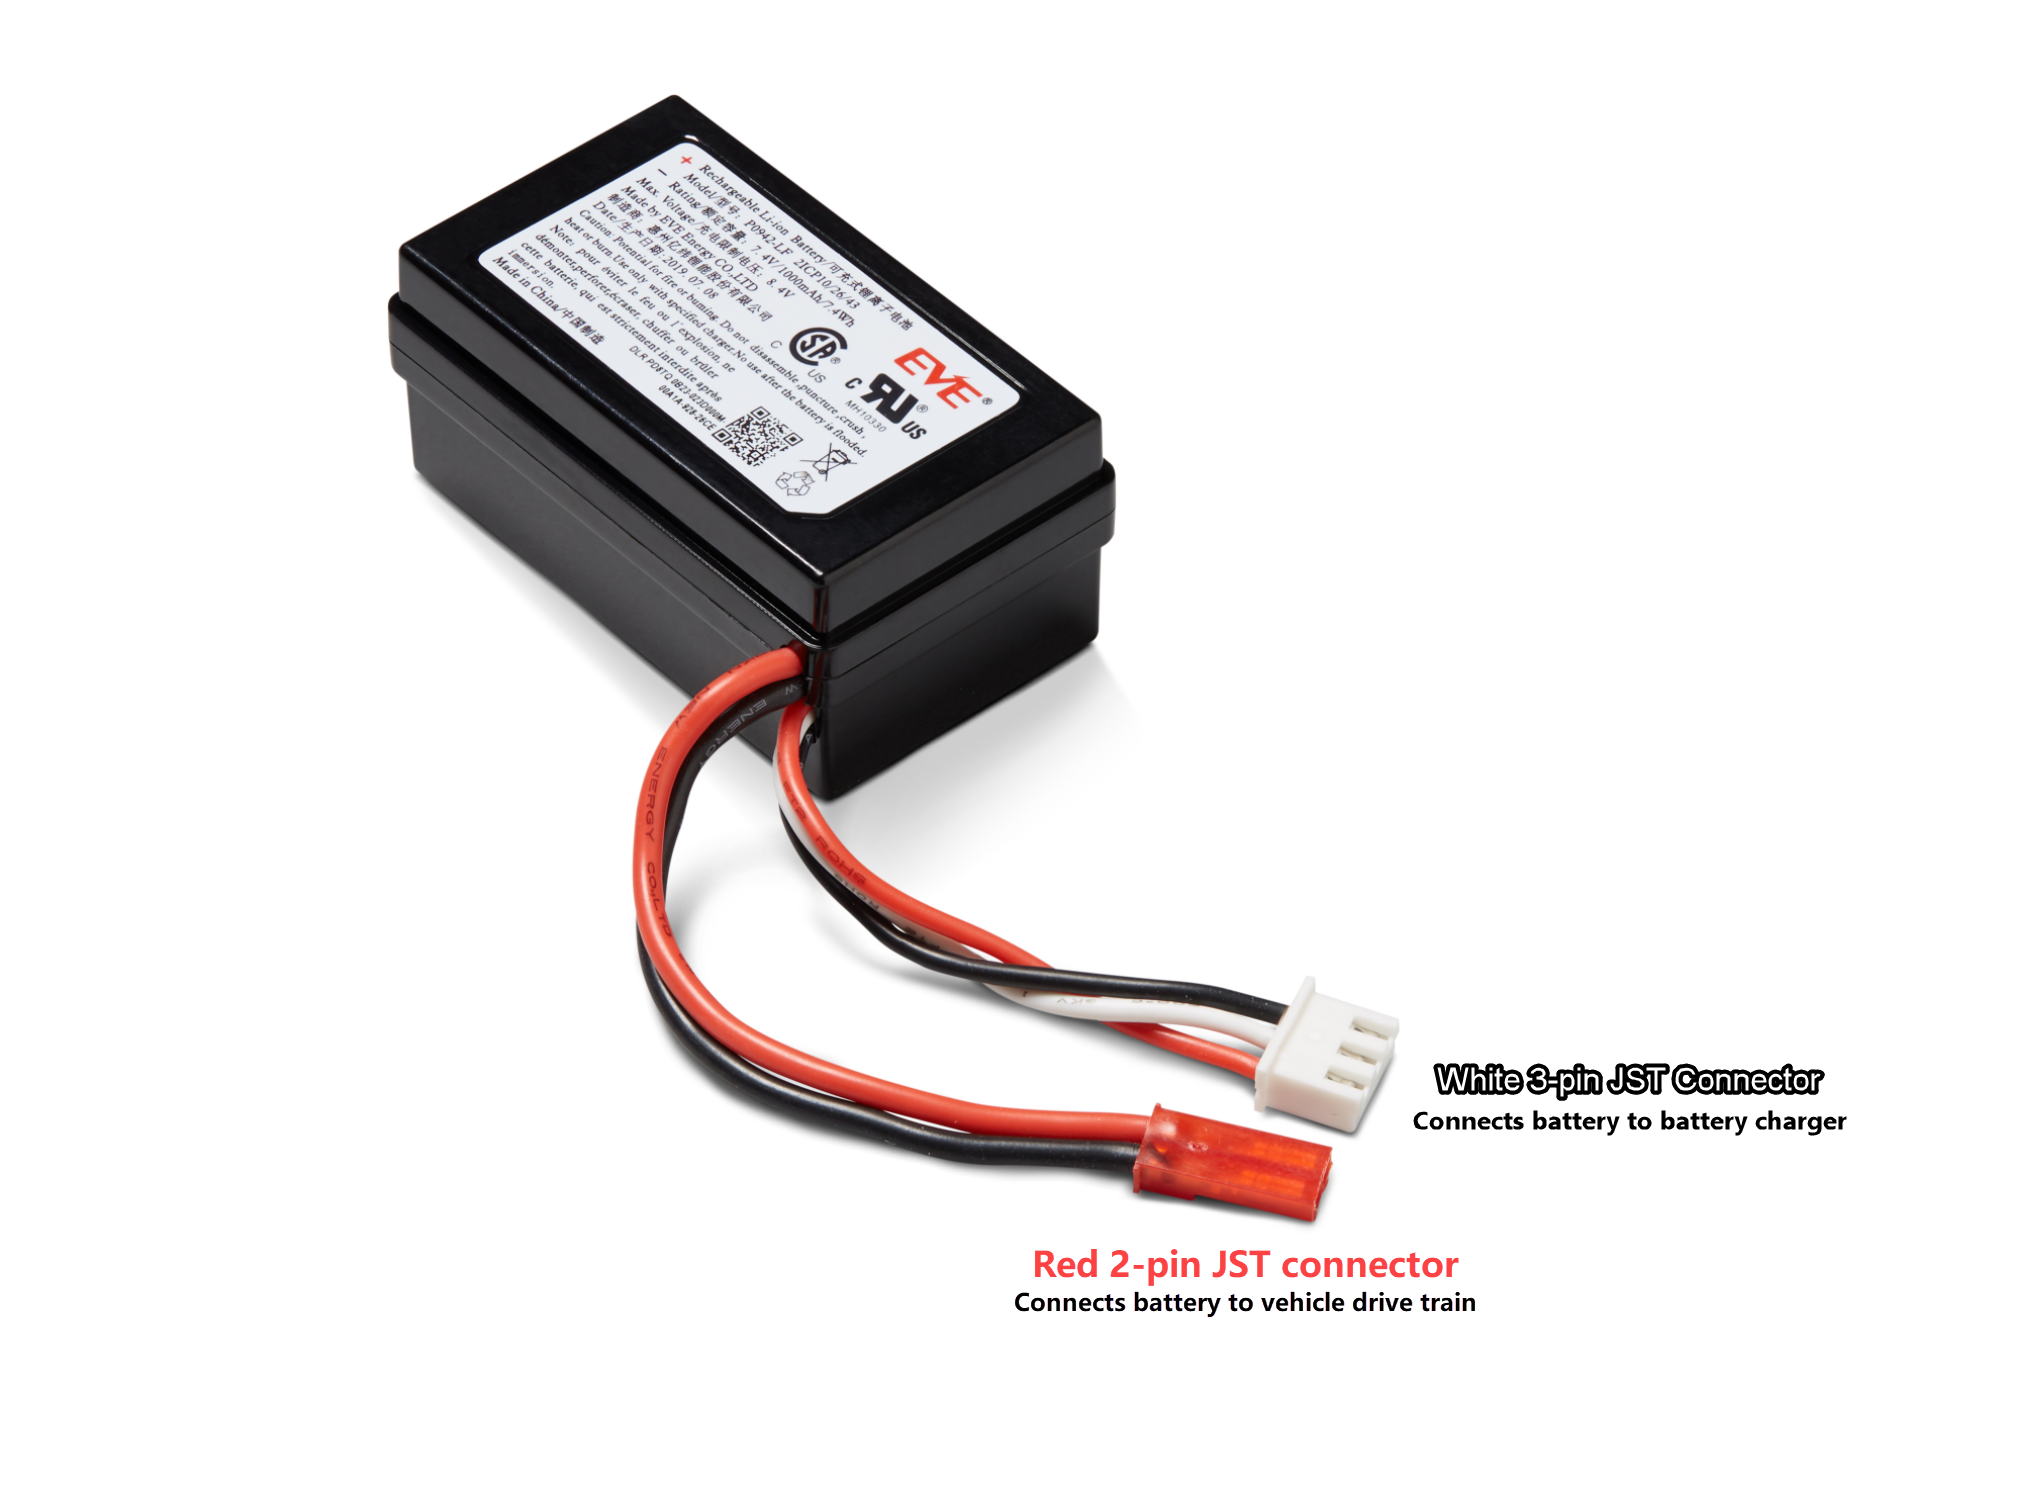 
                Image : Les connecteurs rouge et blanc de la batterie du module d'entraînement du véhicule sont étiquetés. Le connecteur blanc à 3 broches, situé à l'extrémité des câbles noir, rouge et blanc, connecte la batterie du module du véhicule à son chargeur de batterie. Le connecteur rouge à 2 broches, situé à l'extrémité des câbles noir et rouge, connecte la batterie à la transmission du véhicule.
            